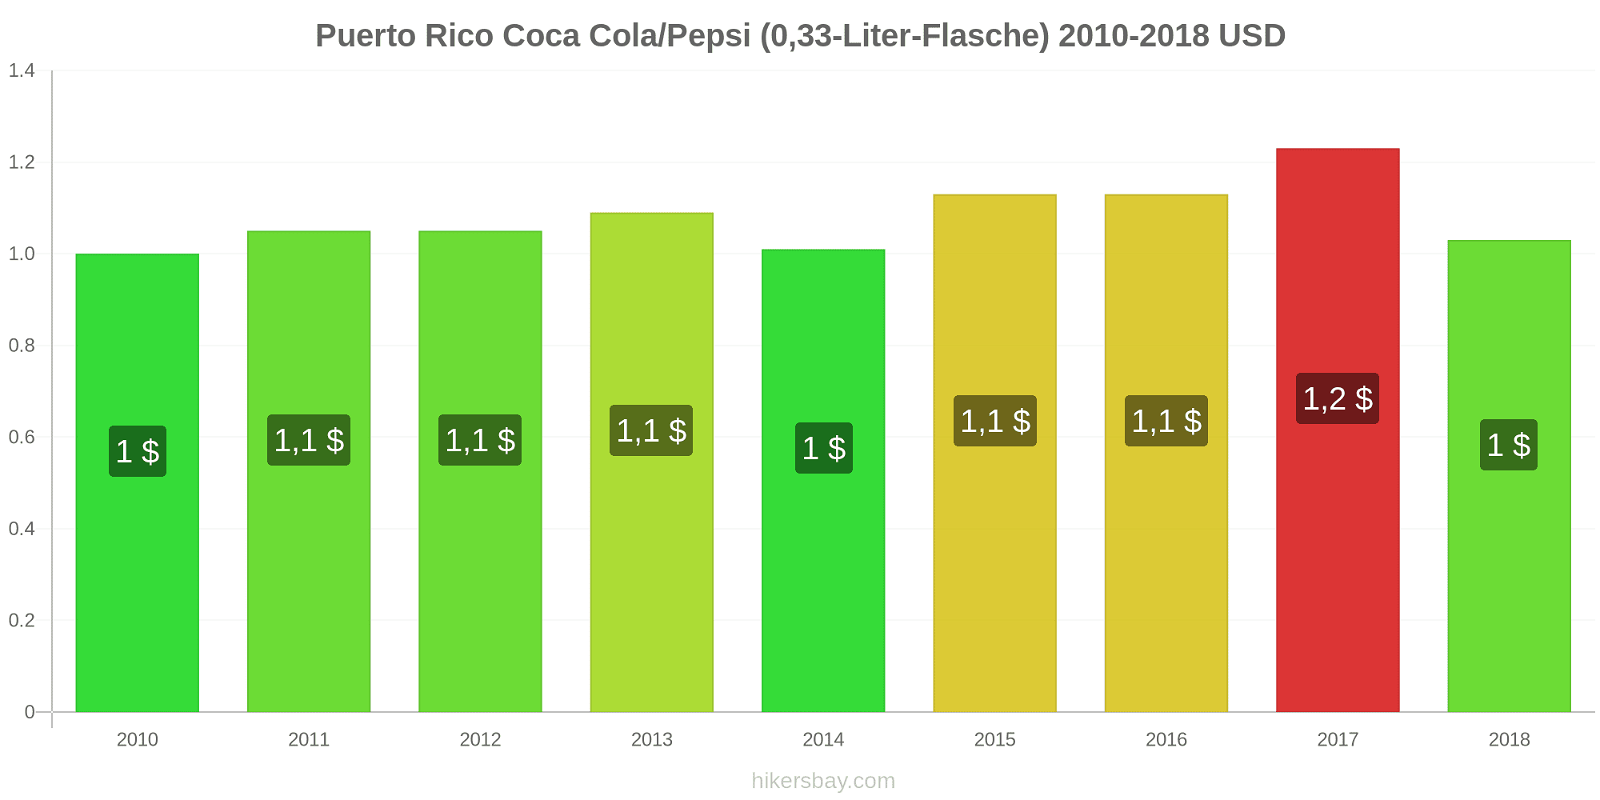 Puerto Rico Preisänderungen Coke/Pepsi (0,33-Liter-Flasche) hikersbay.com